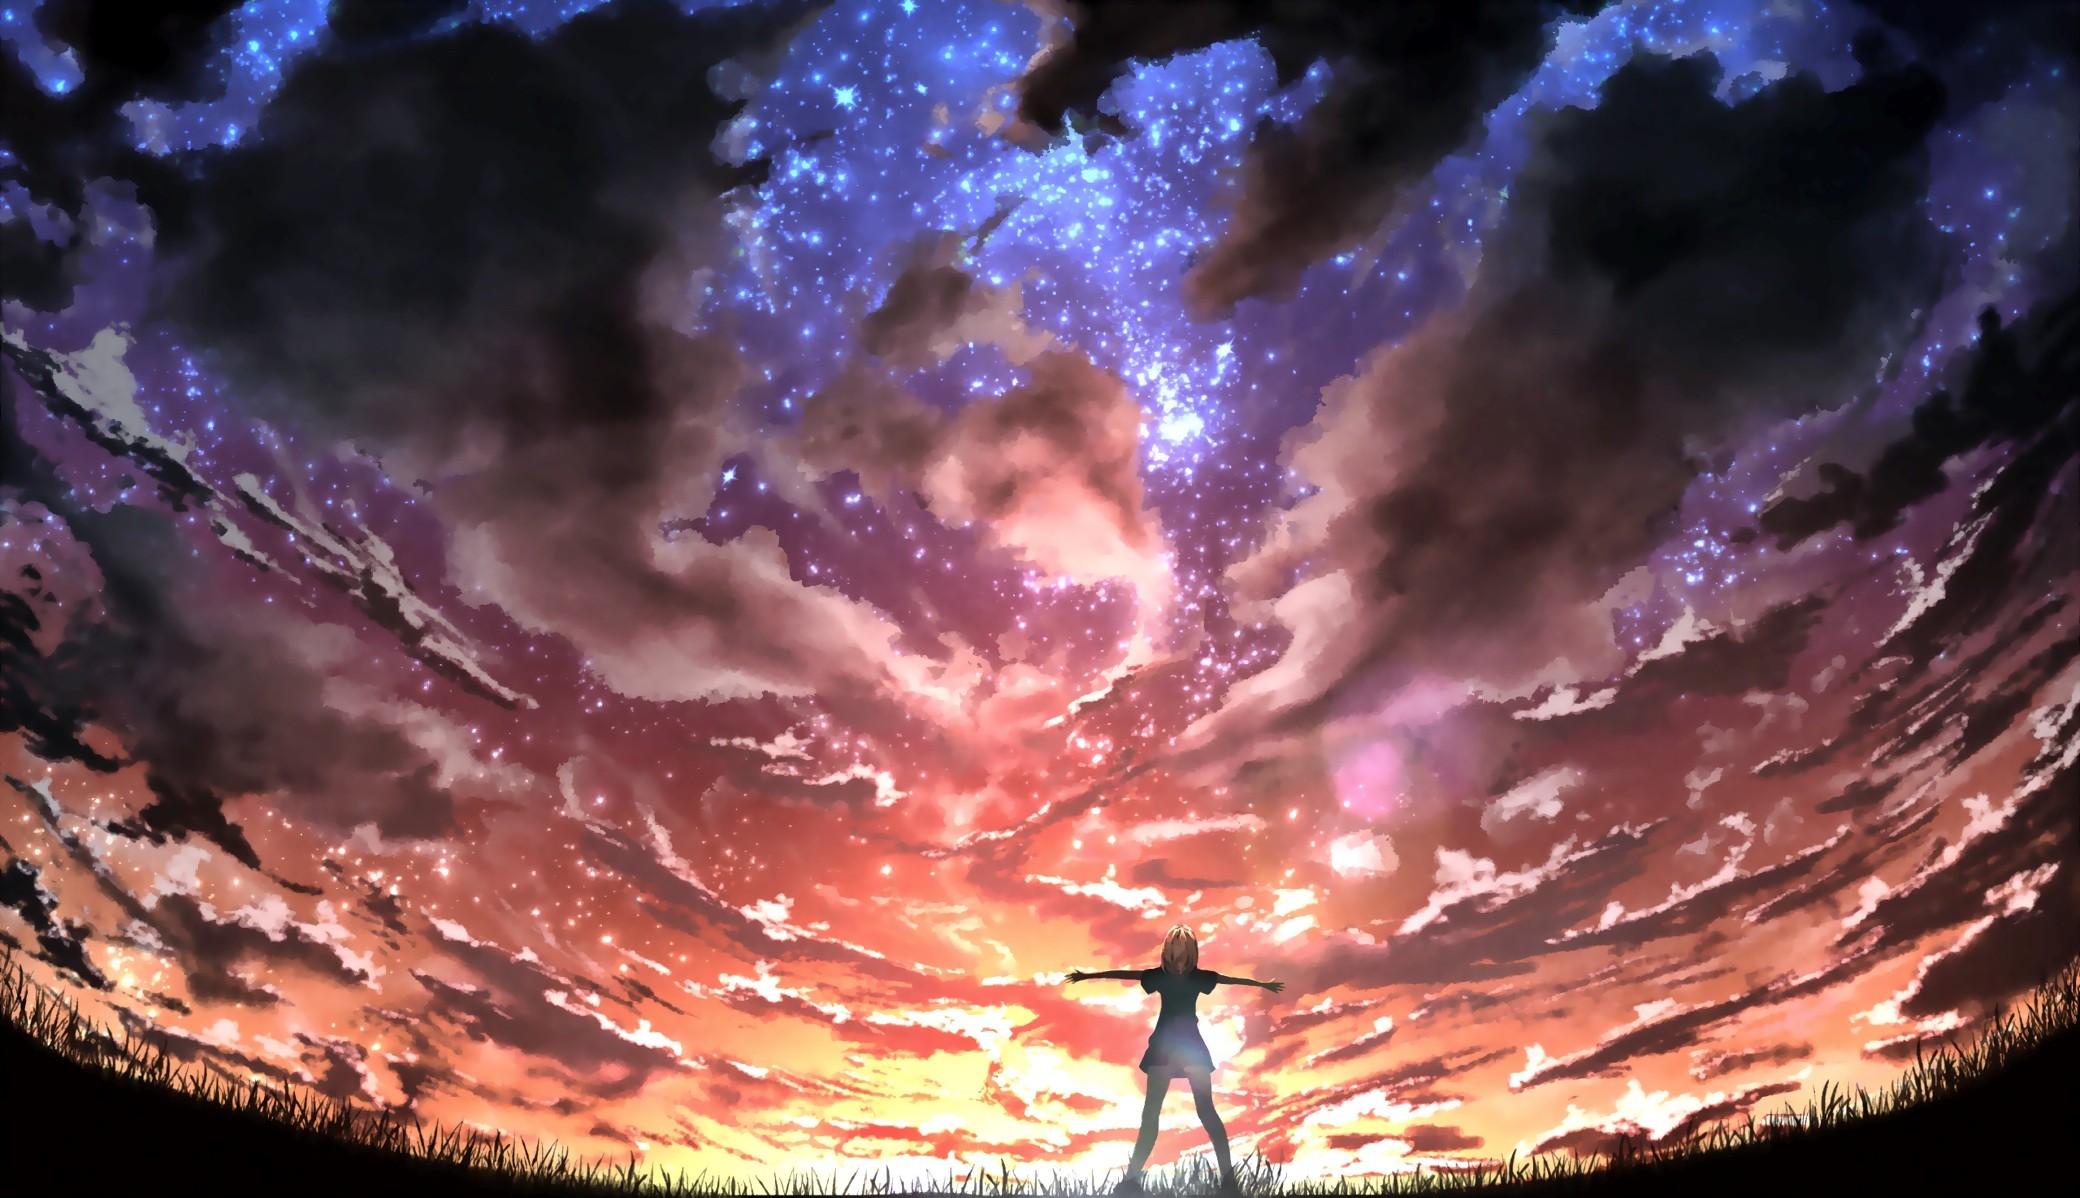 Anime Background Wallpaper 4k - 2080x1198 Wallpaper 